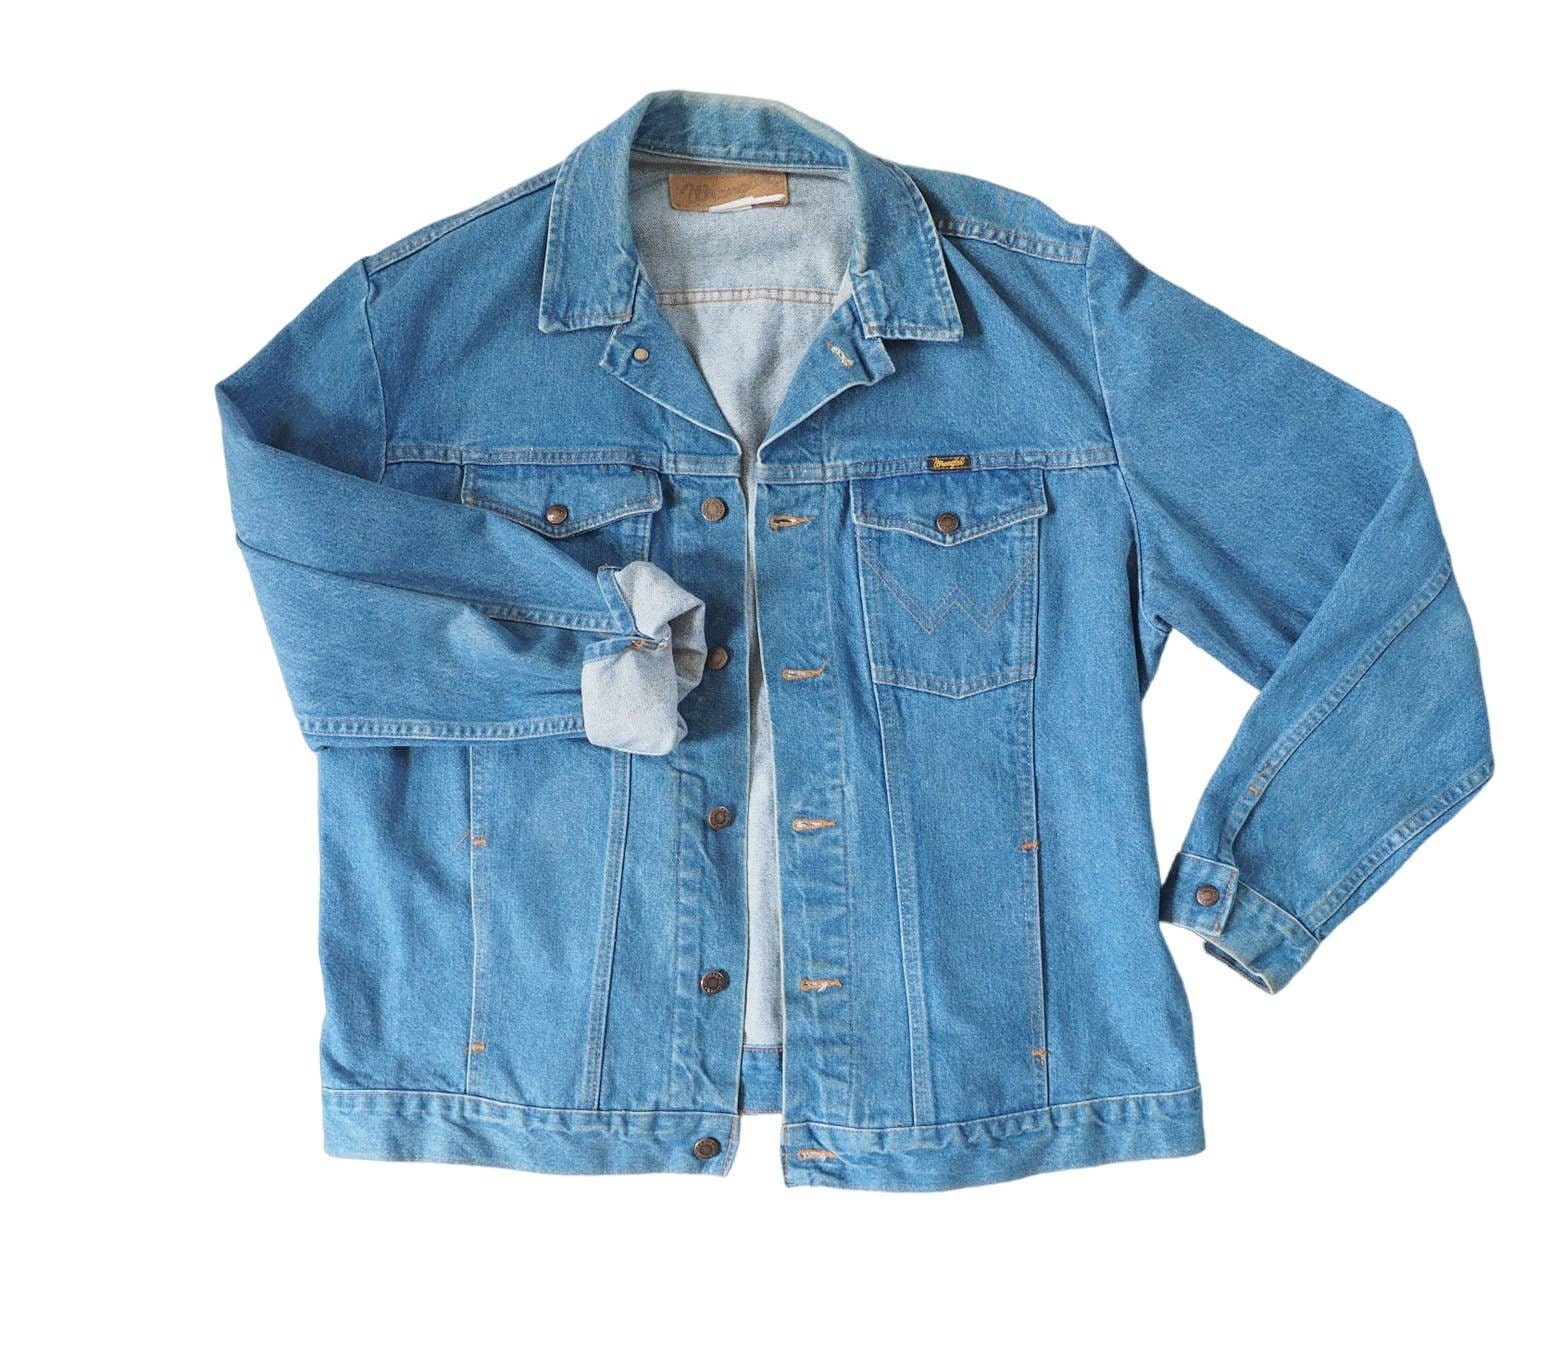 XL Men's 1980s Denim Jacket - 80s Dark Indigo Blue Jean Preppy